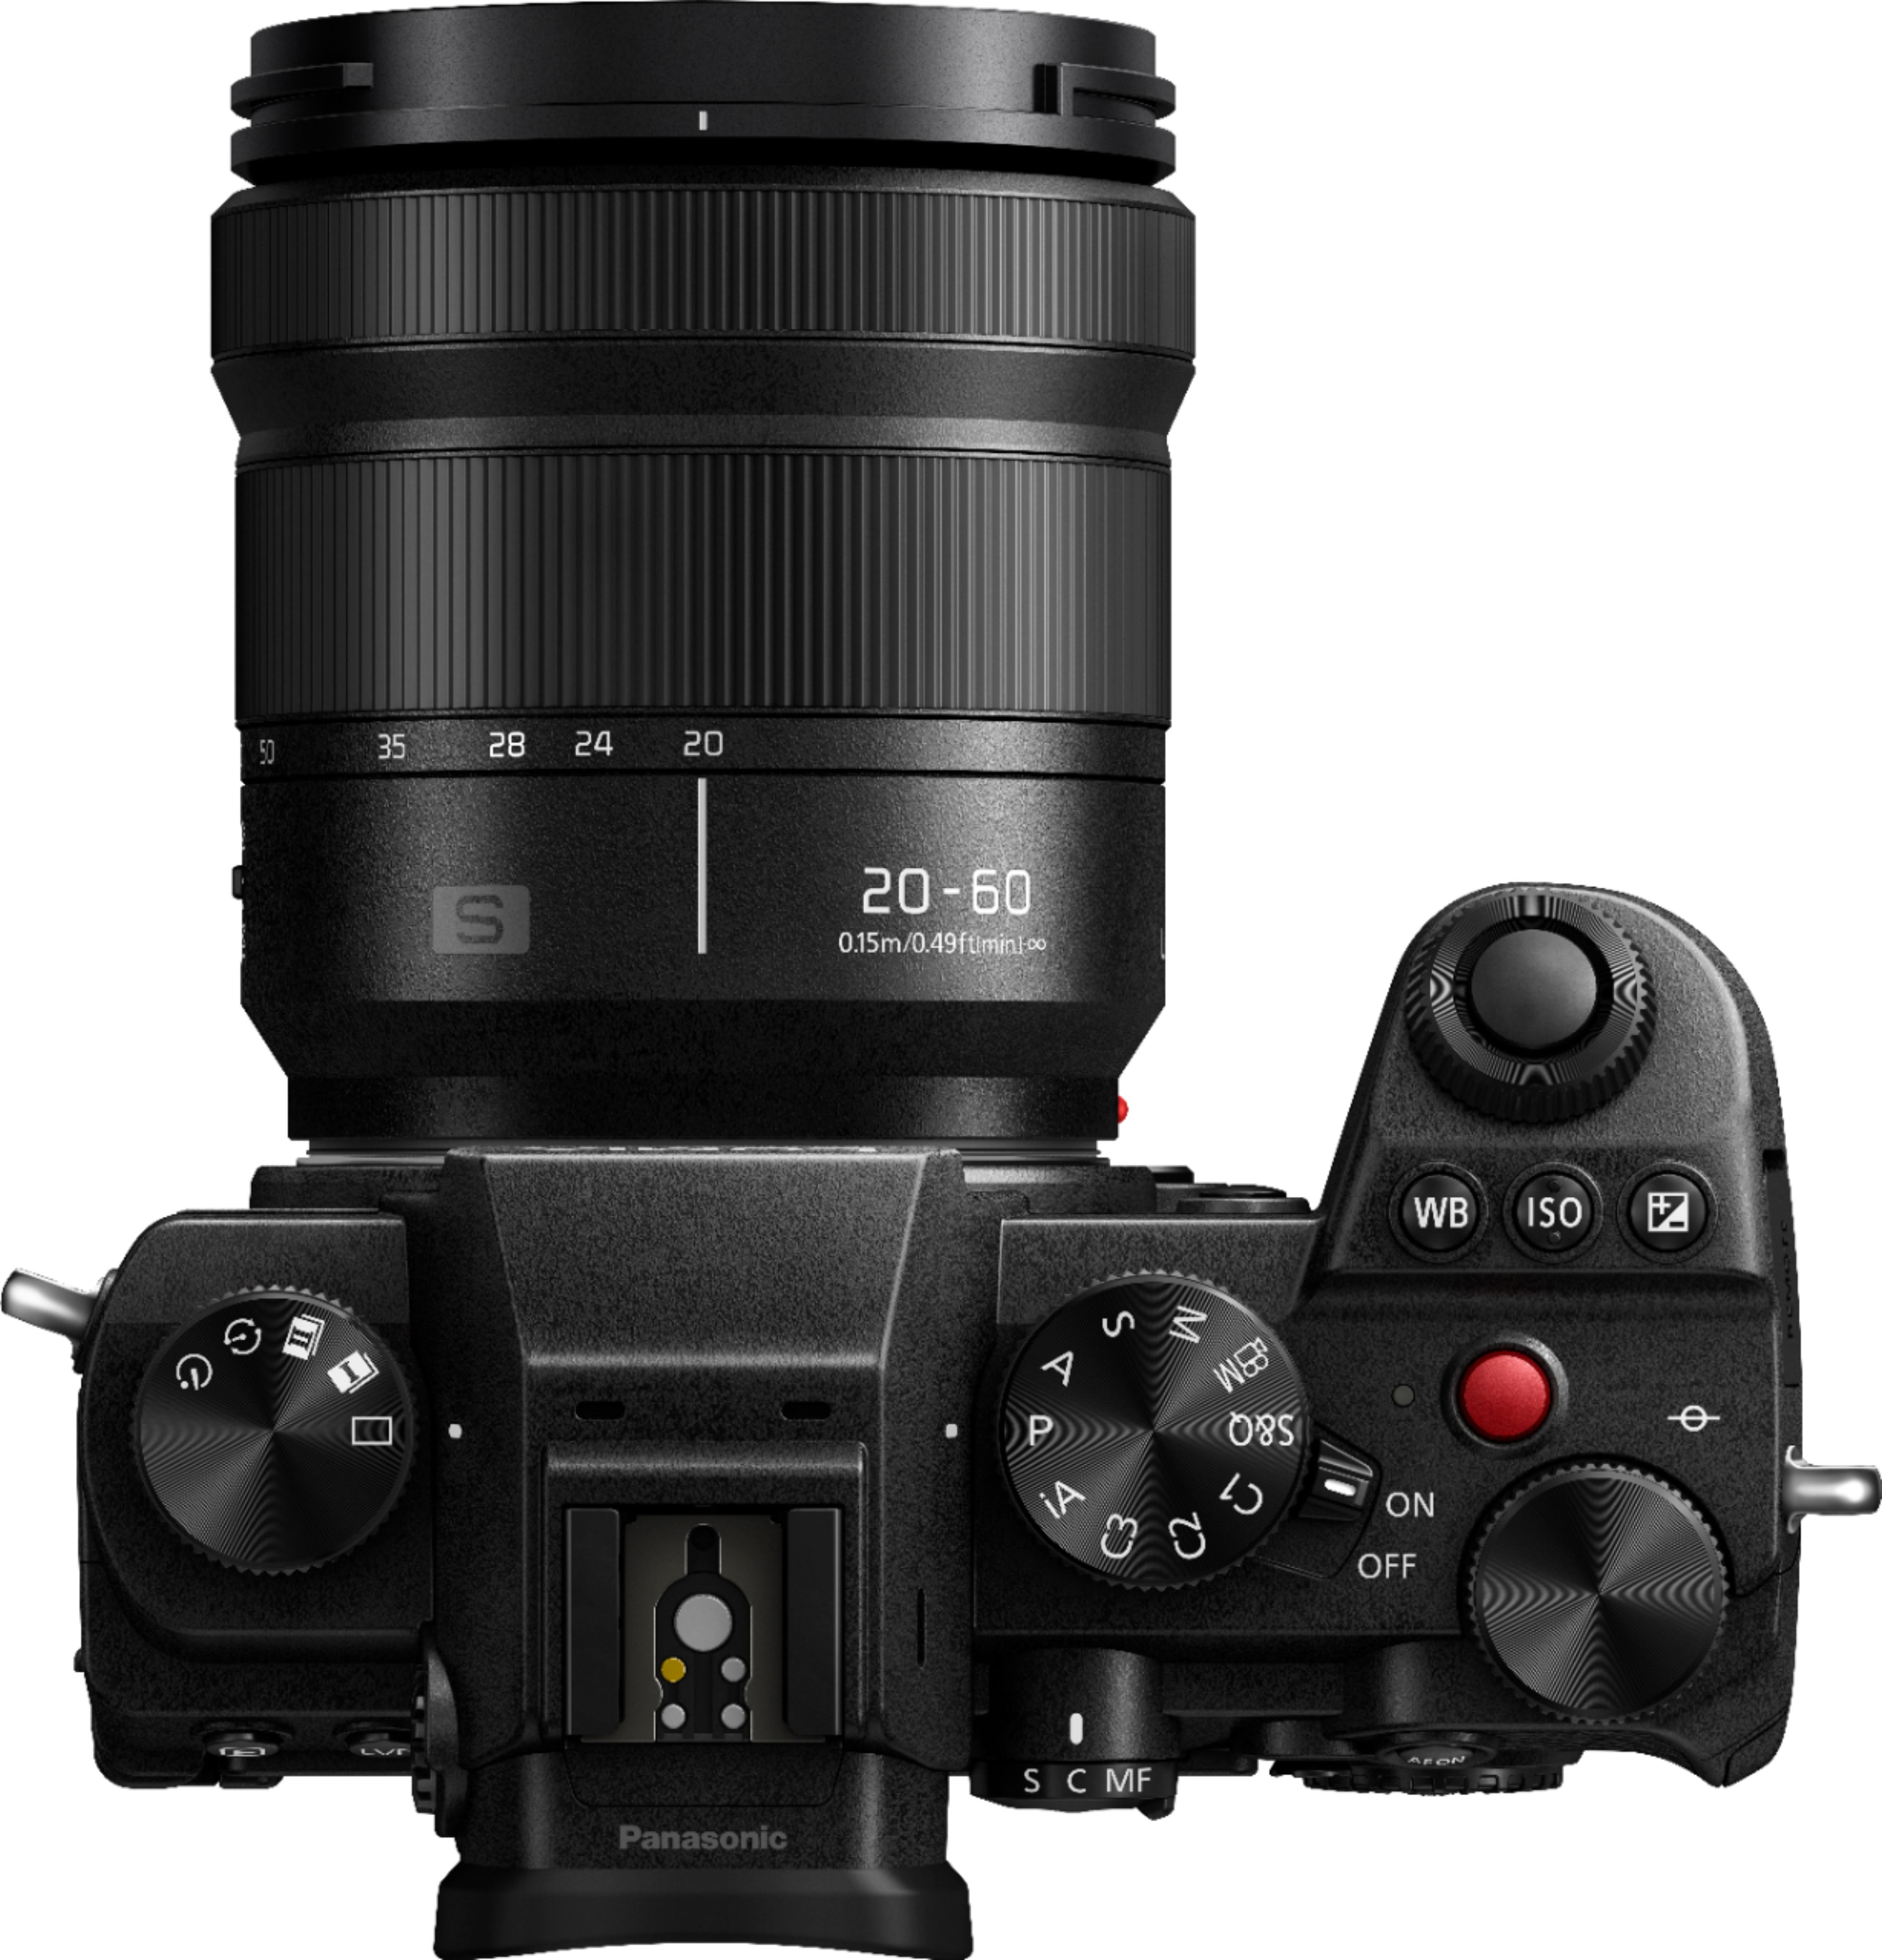 Panasonic LUMIX S5 Mirrorless Camera Body with 20-60mm F3.5-5.6